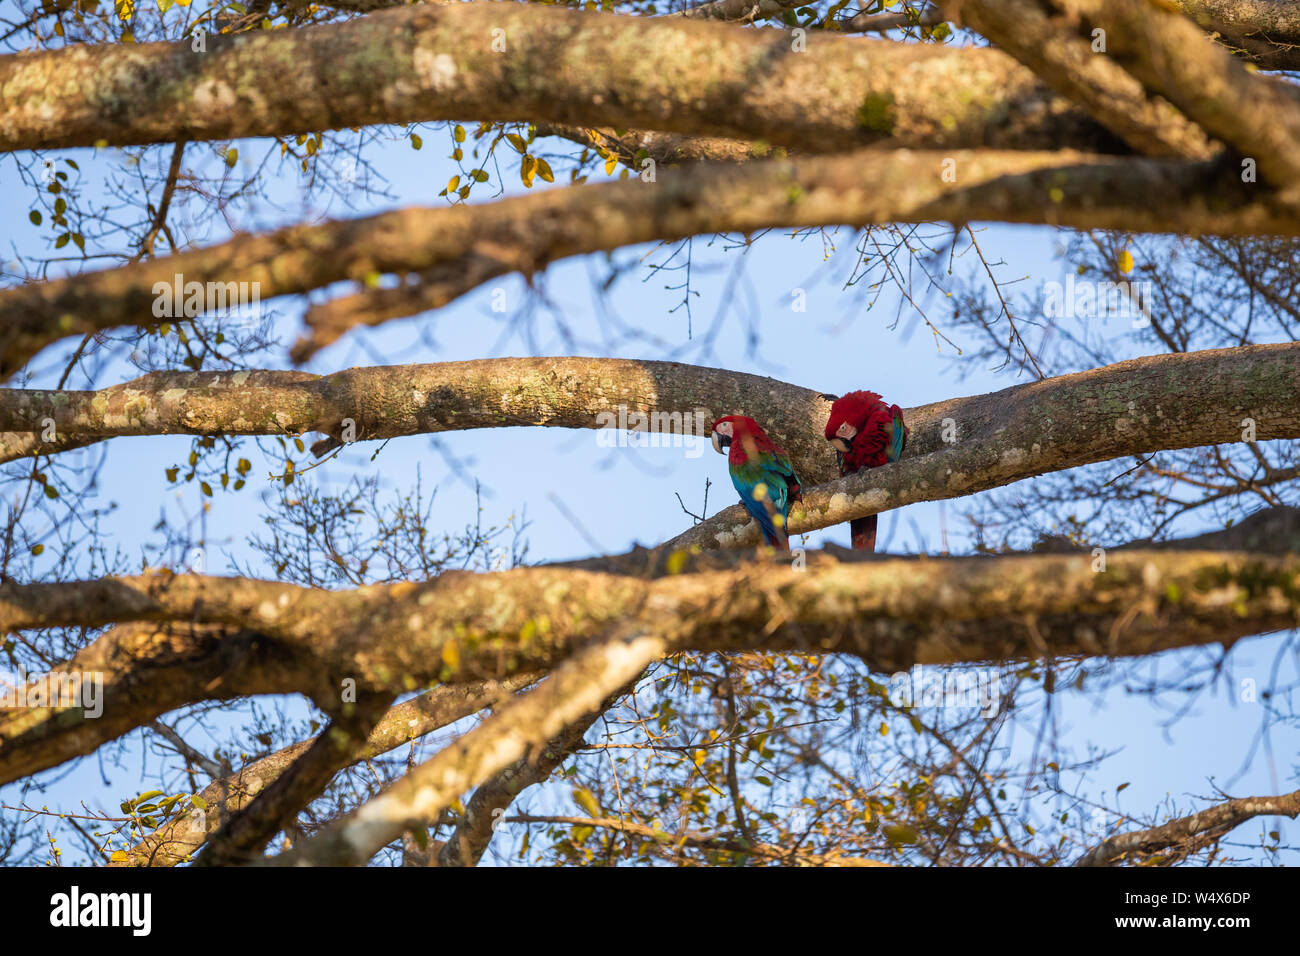 Paire rare Ara vert et rouge perroquets sur la branche dans l'environnement naturel des zones humides du Pantanal Brésilien Banque D'Images